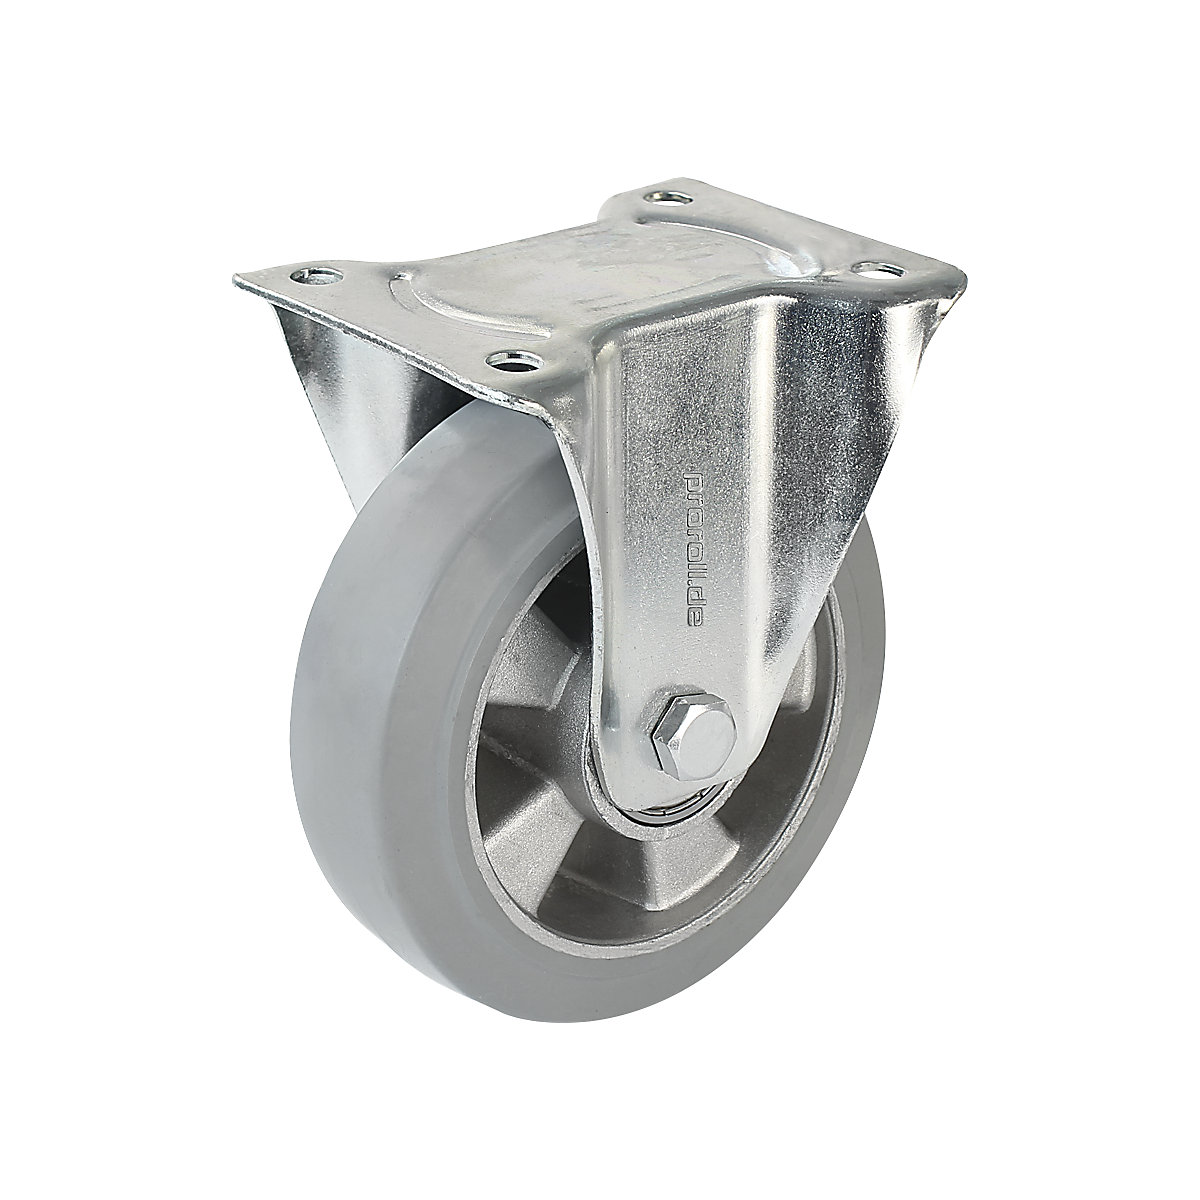 Elastični kotač od pune gume, u sivoj boji – Proroll, Ø x širina kotača 160 x 50 mm, fiksni kotač-5